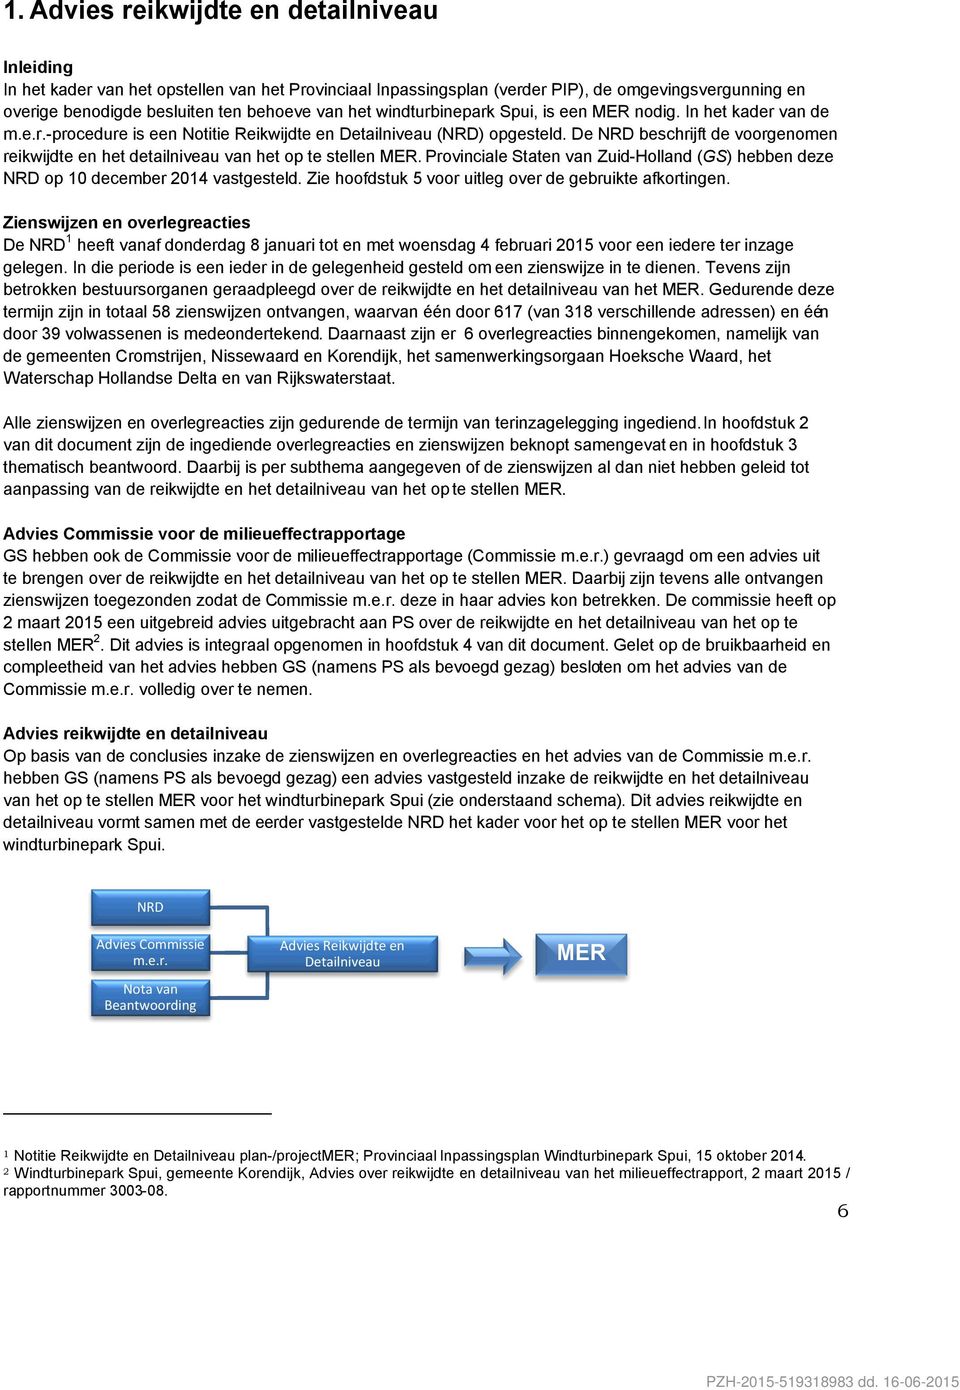 De NRD beschrijft de voorgenomen reikwijdte en het detailniveau van het op te stellen MER. Provinciale Staten van Zuid-Holland (GS) hebben deze NRD op 10 december 2014 vastgesteld.